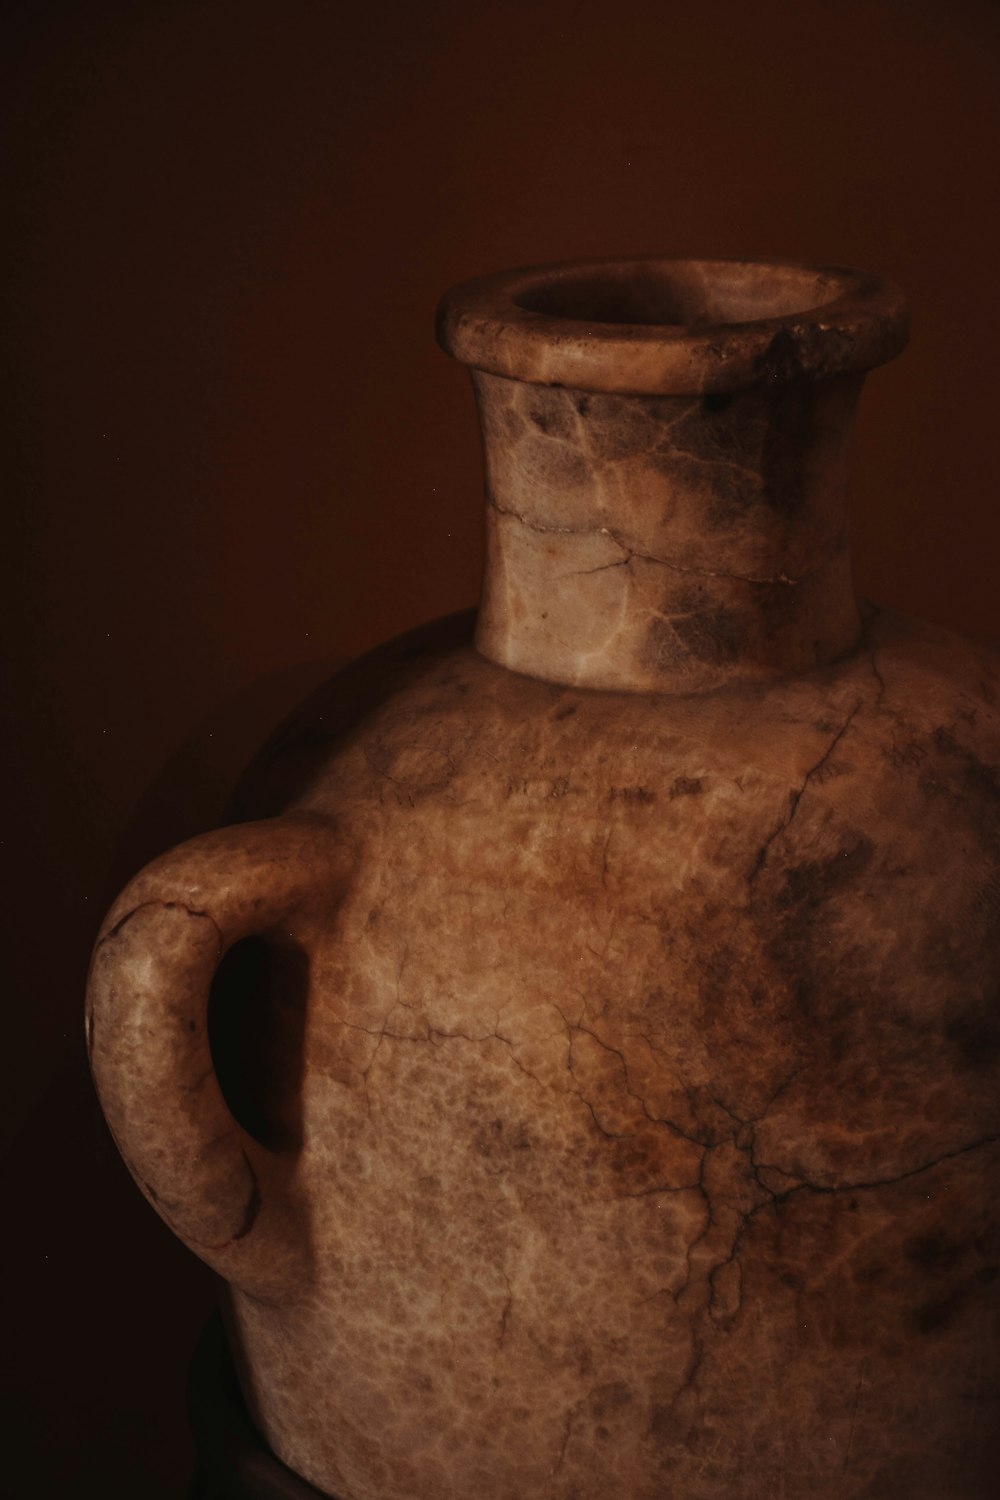 a close-up of a vase